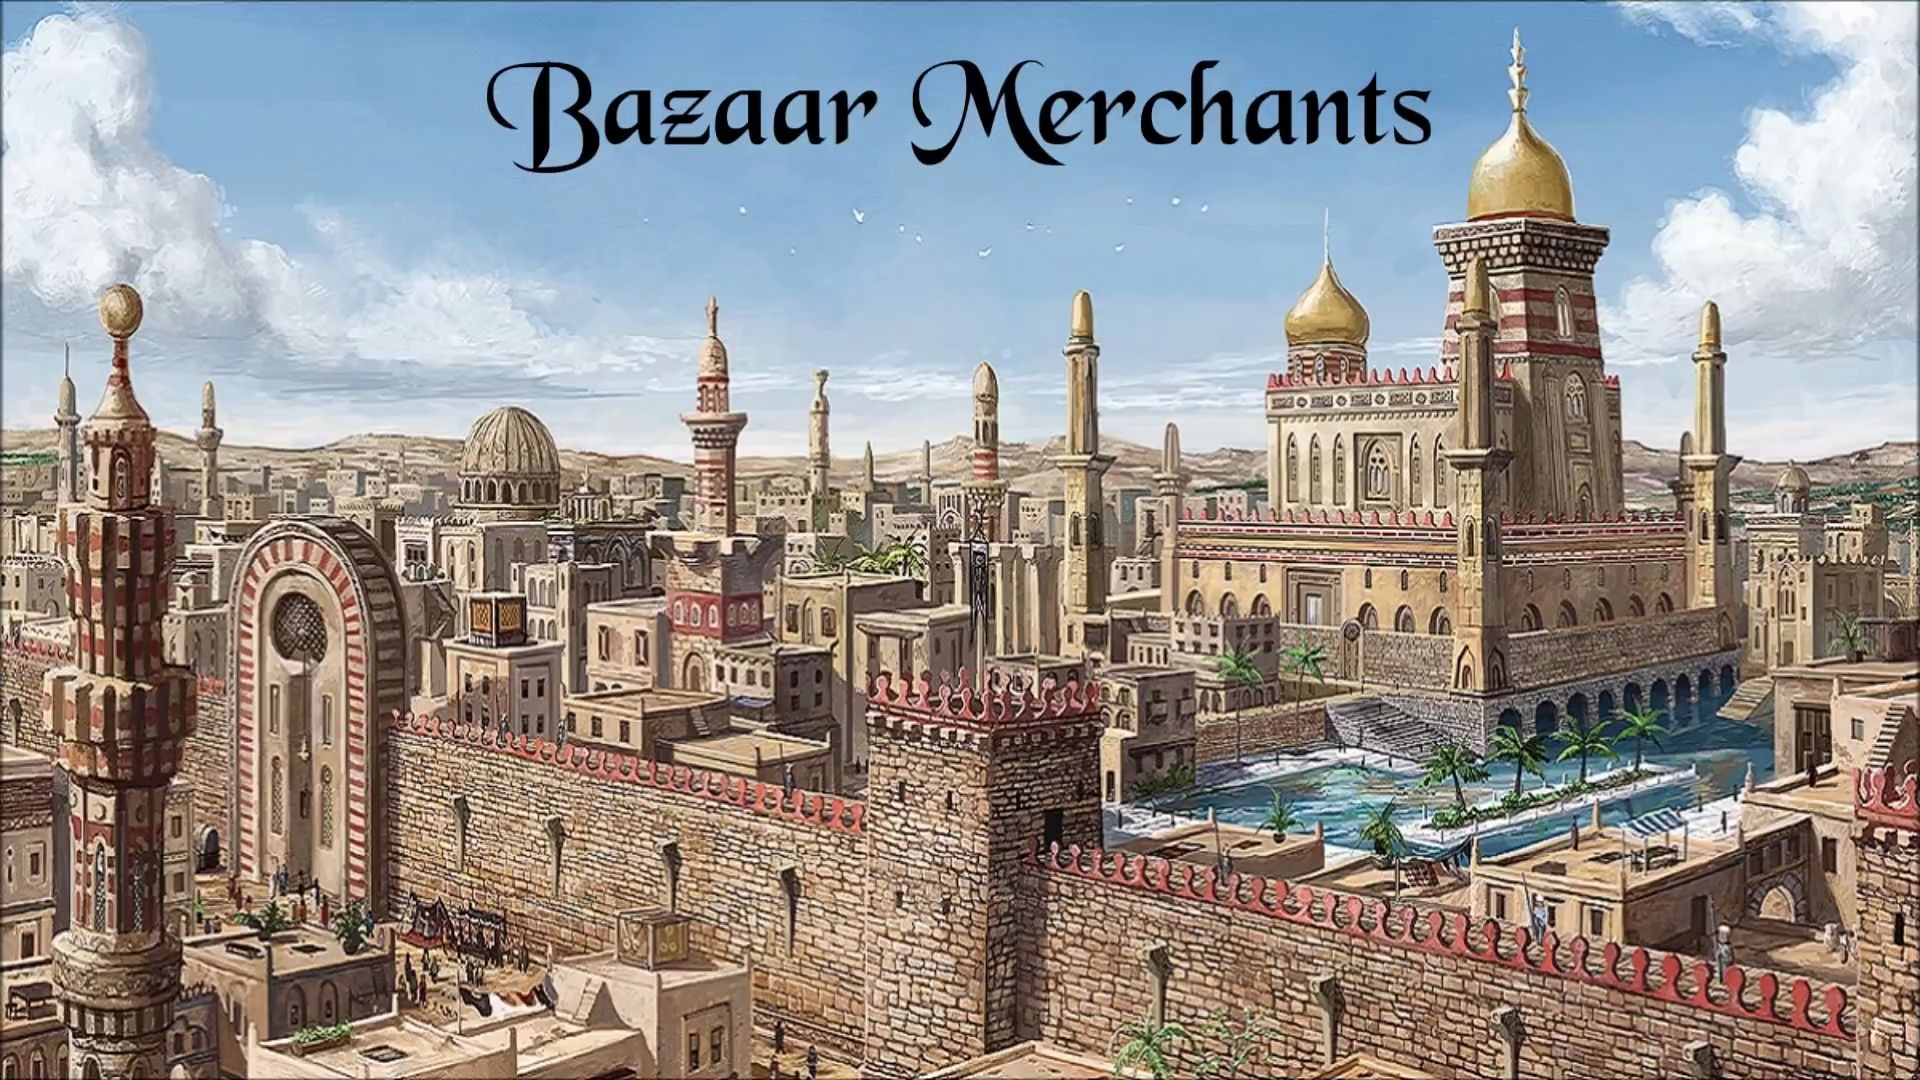 阿拉伯古音乐-集市商人 Ancient Arabic Music - Bazaar Merchants